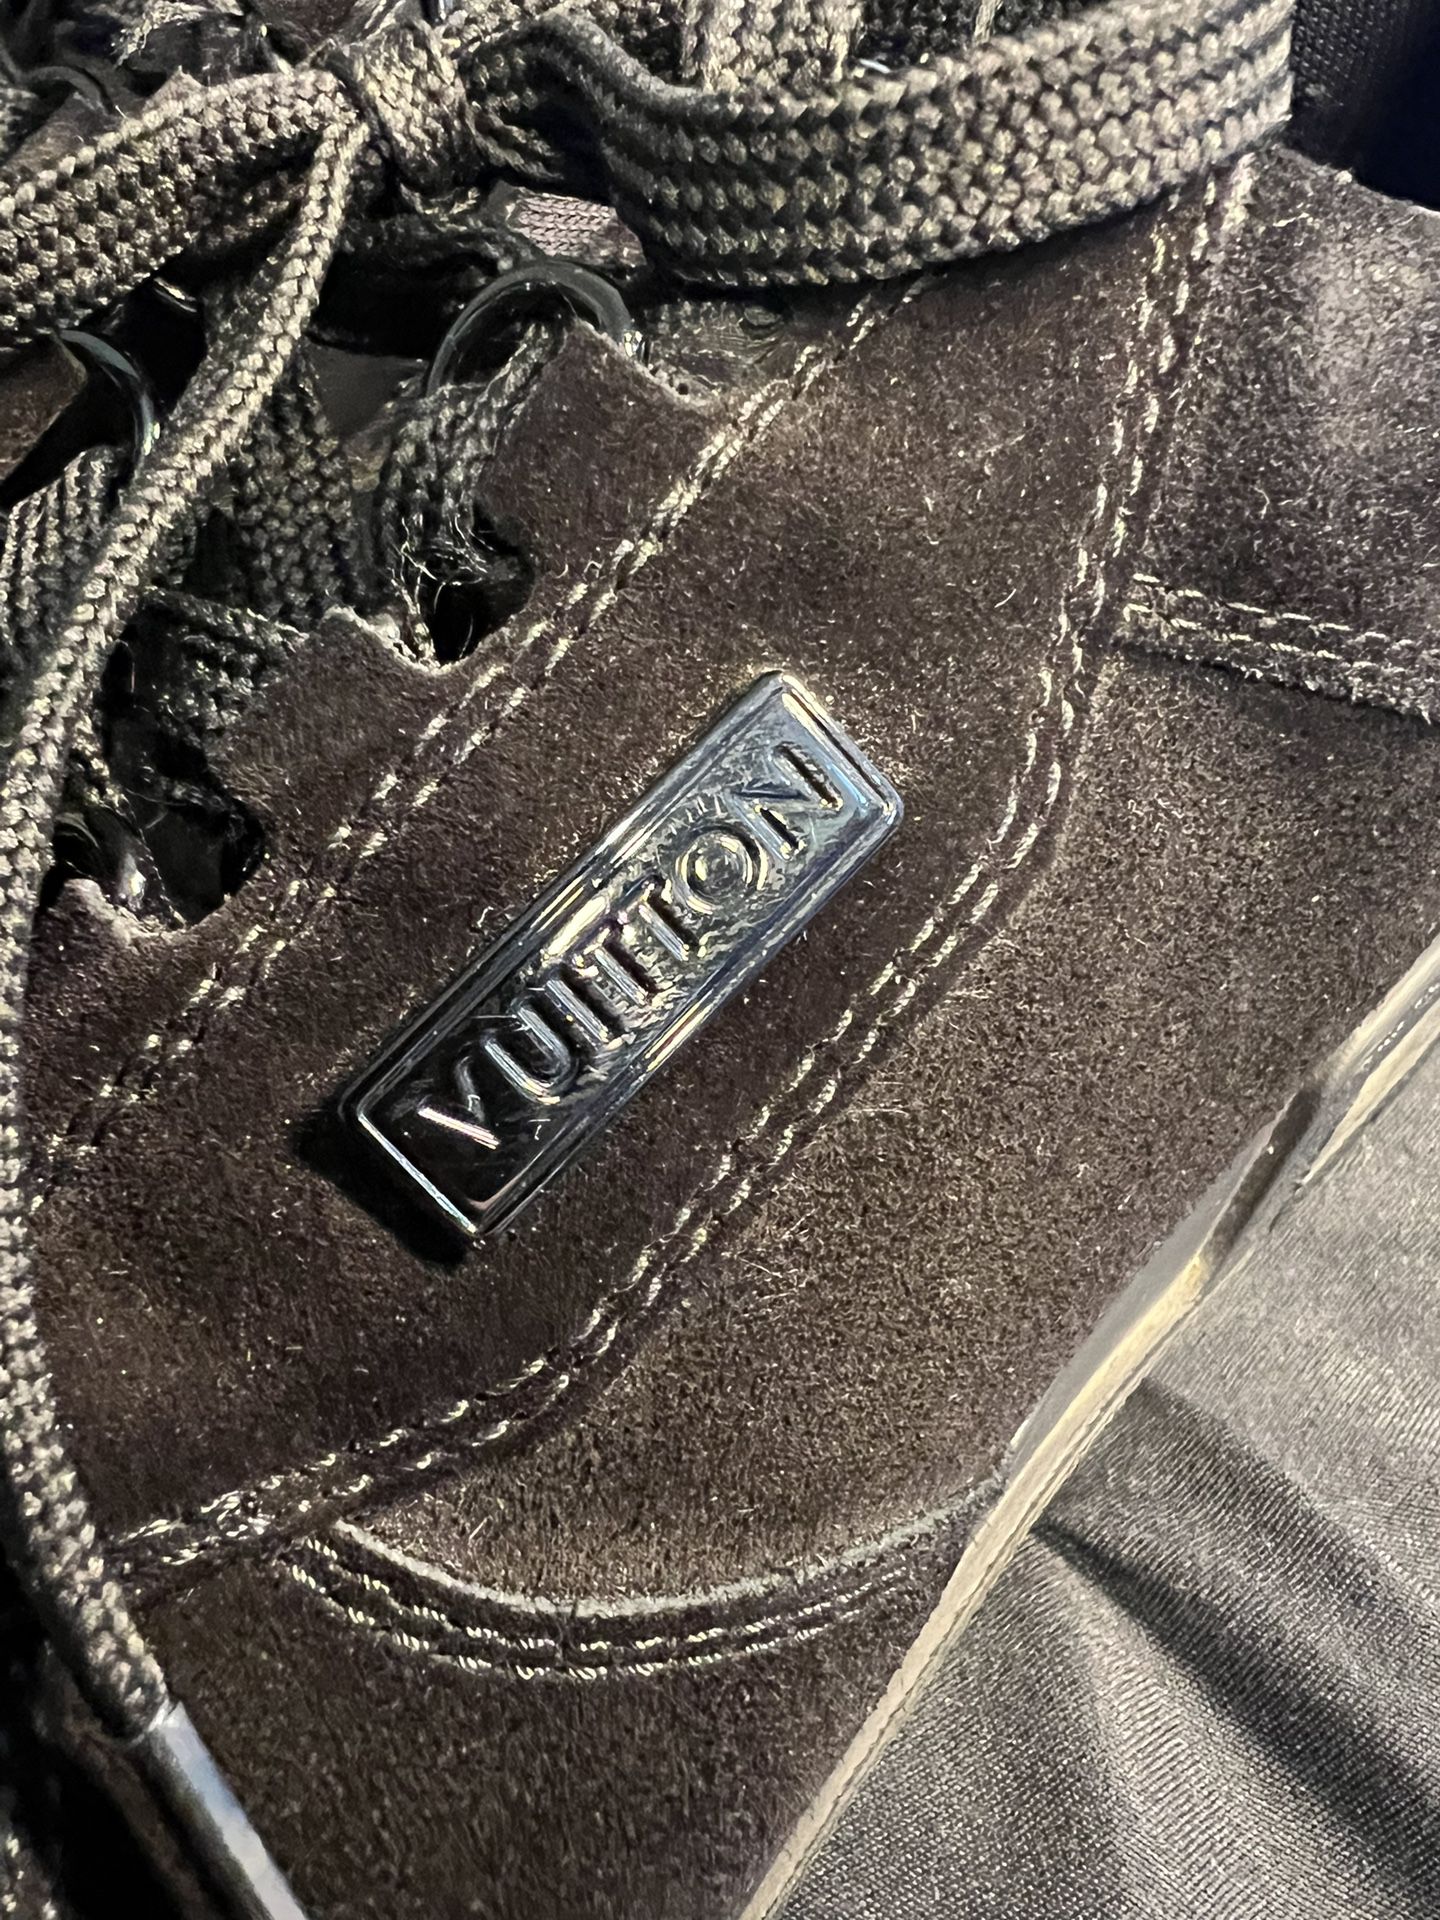 LOUIS VUITTON LV “Virgil Abloh” Trainer Sneakers Black Suede Size